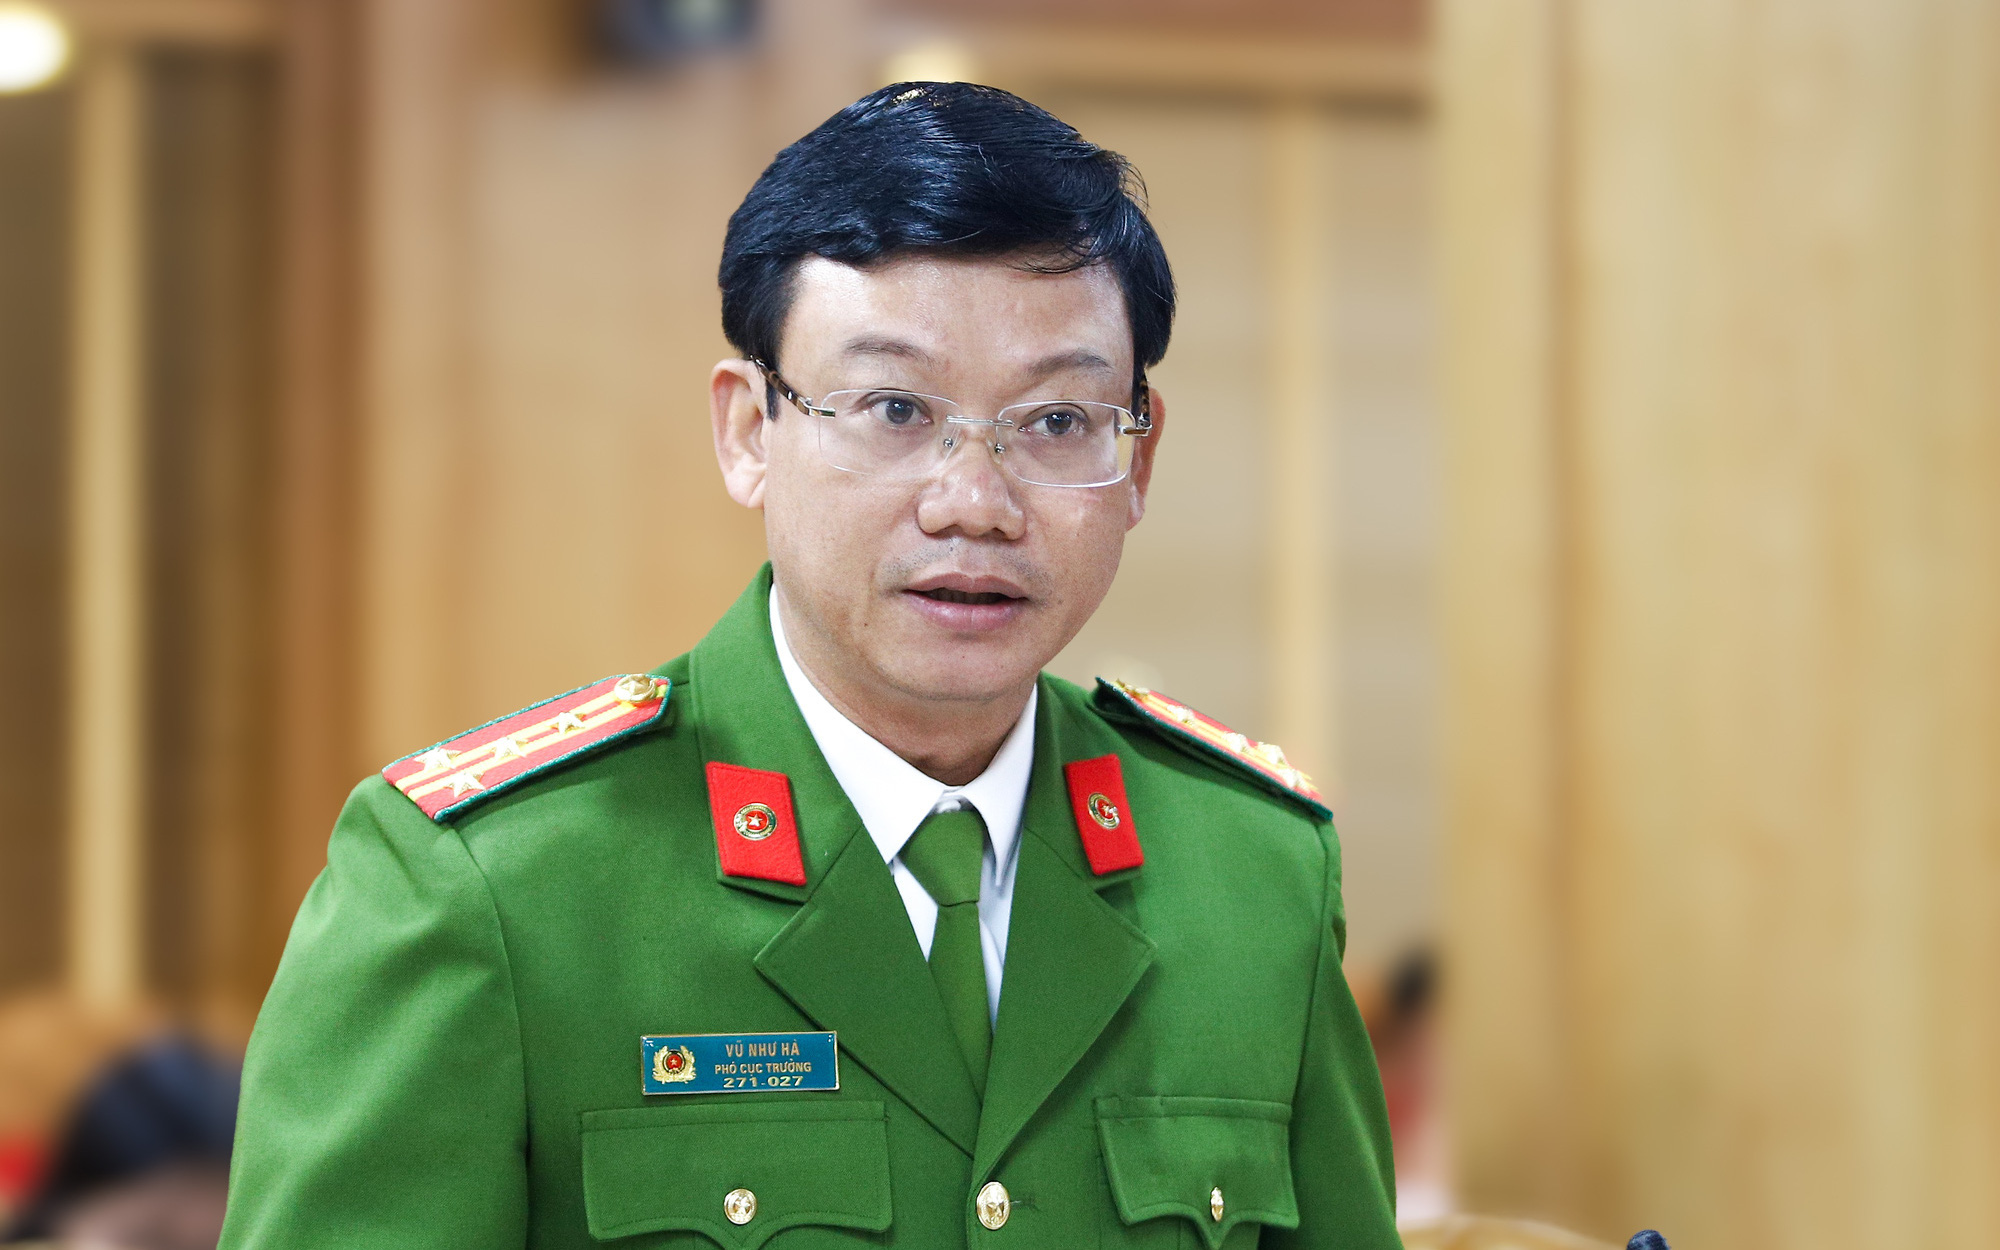 Bãi nhiệm Ủy viên UBND tỉnh với nguyên giám đốc Công an tỉnh Lạng Sơn Thái Hồng Công